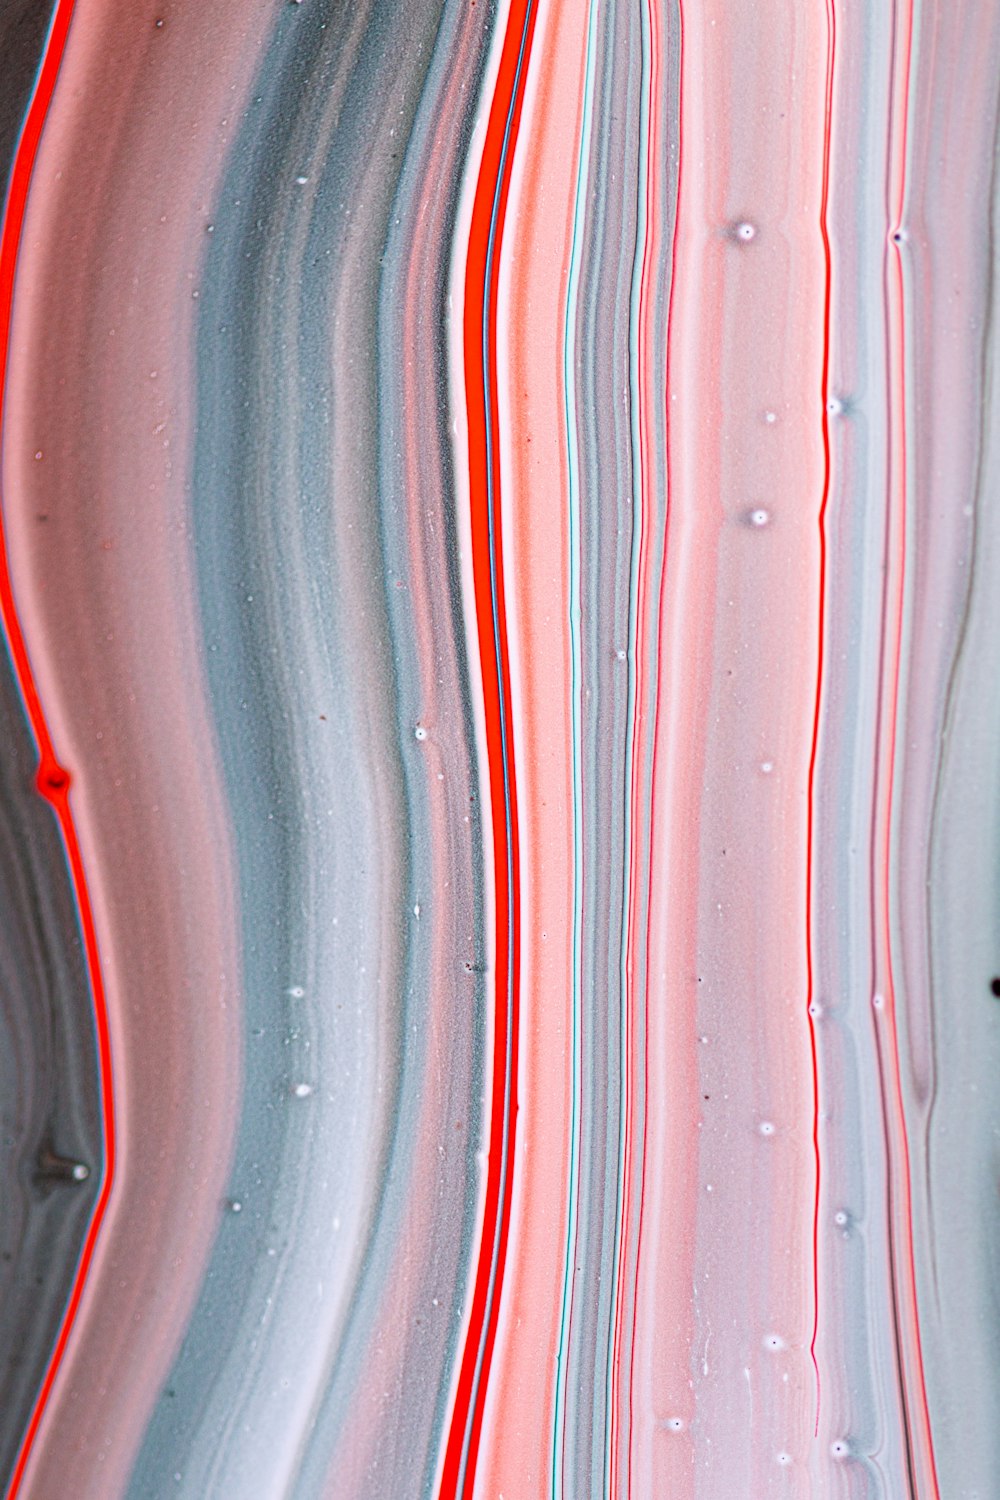 pintura abstrata vermelha branca e azul